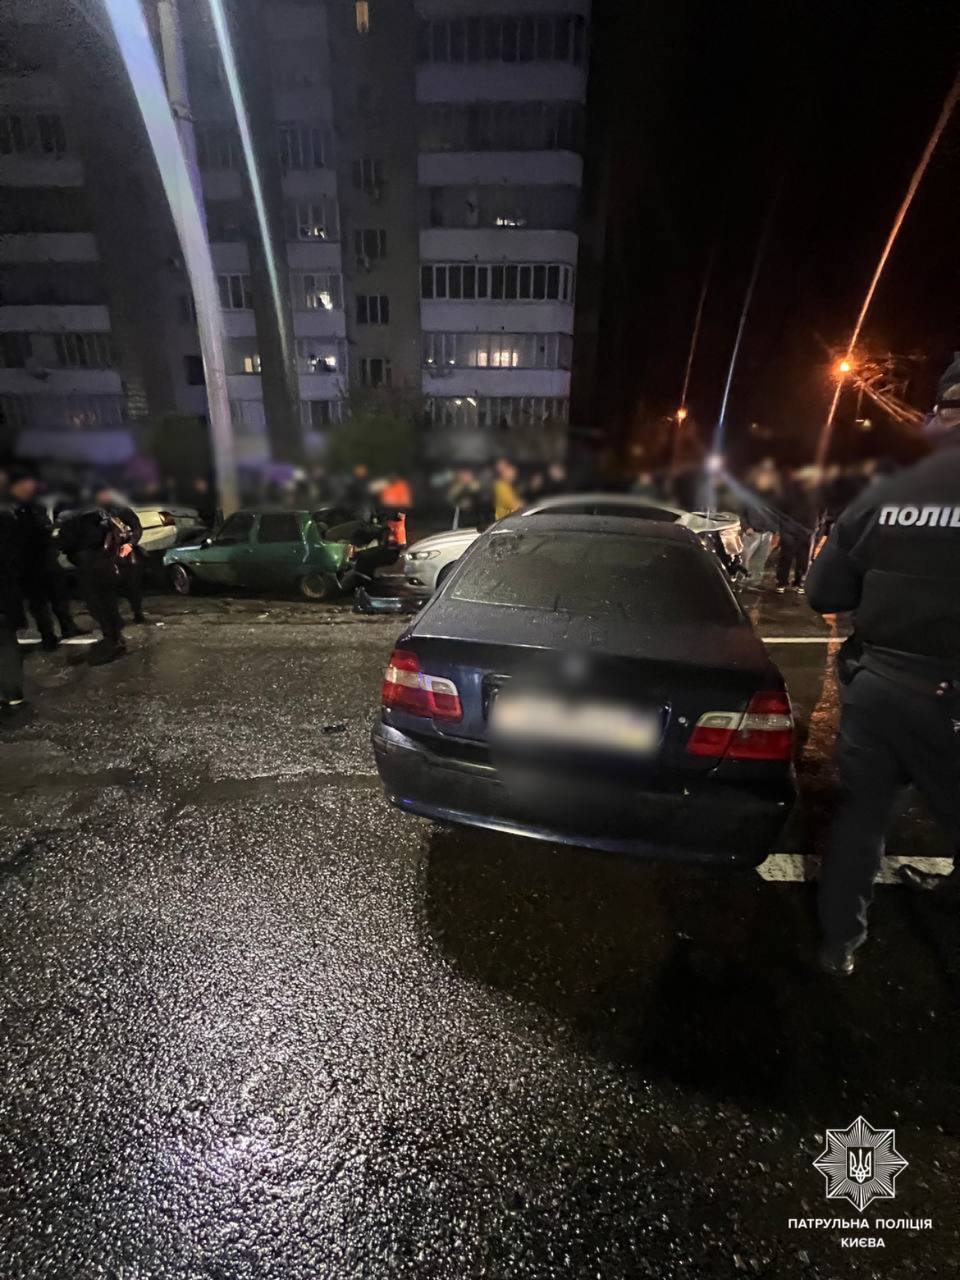 В Киеве произошло масштабное ДТП, которое переросло в драку: есть задержанные. Фото и видео